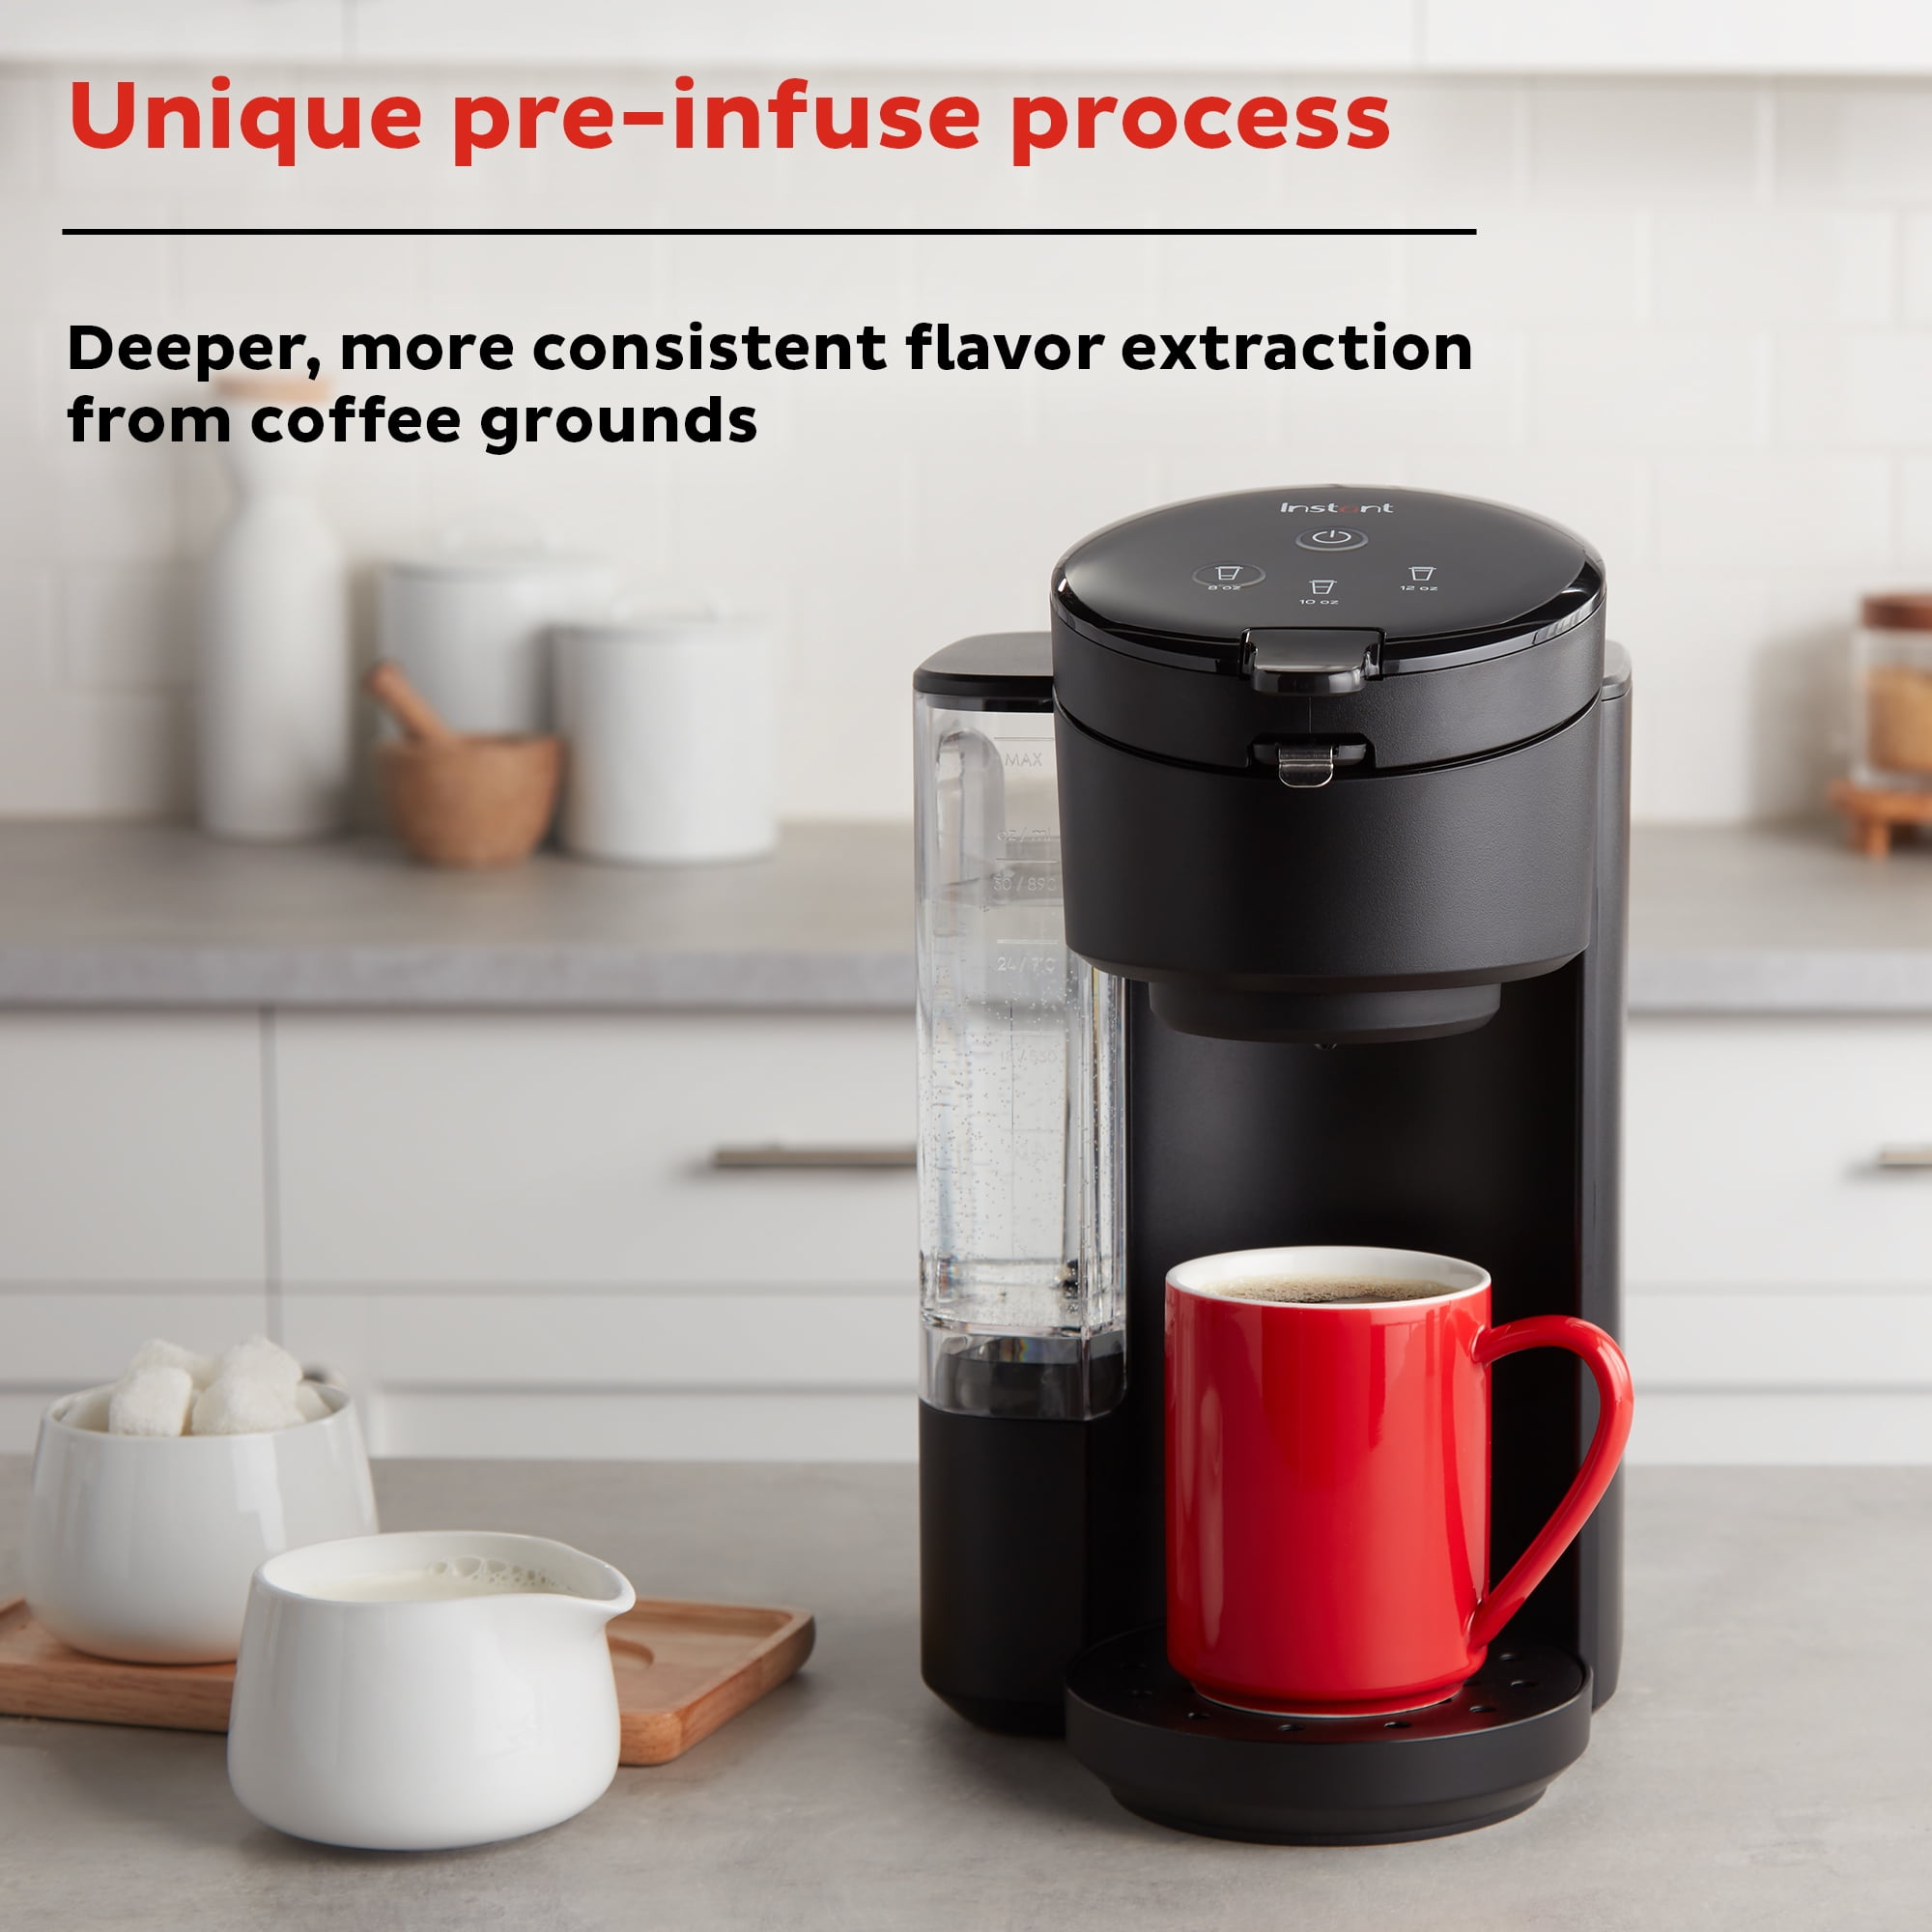 Instant™ Solo™ Single Serve Coffee Maker, Gray